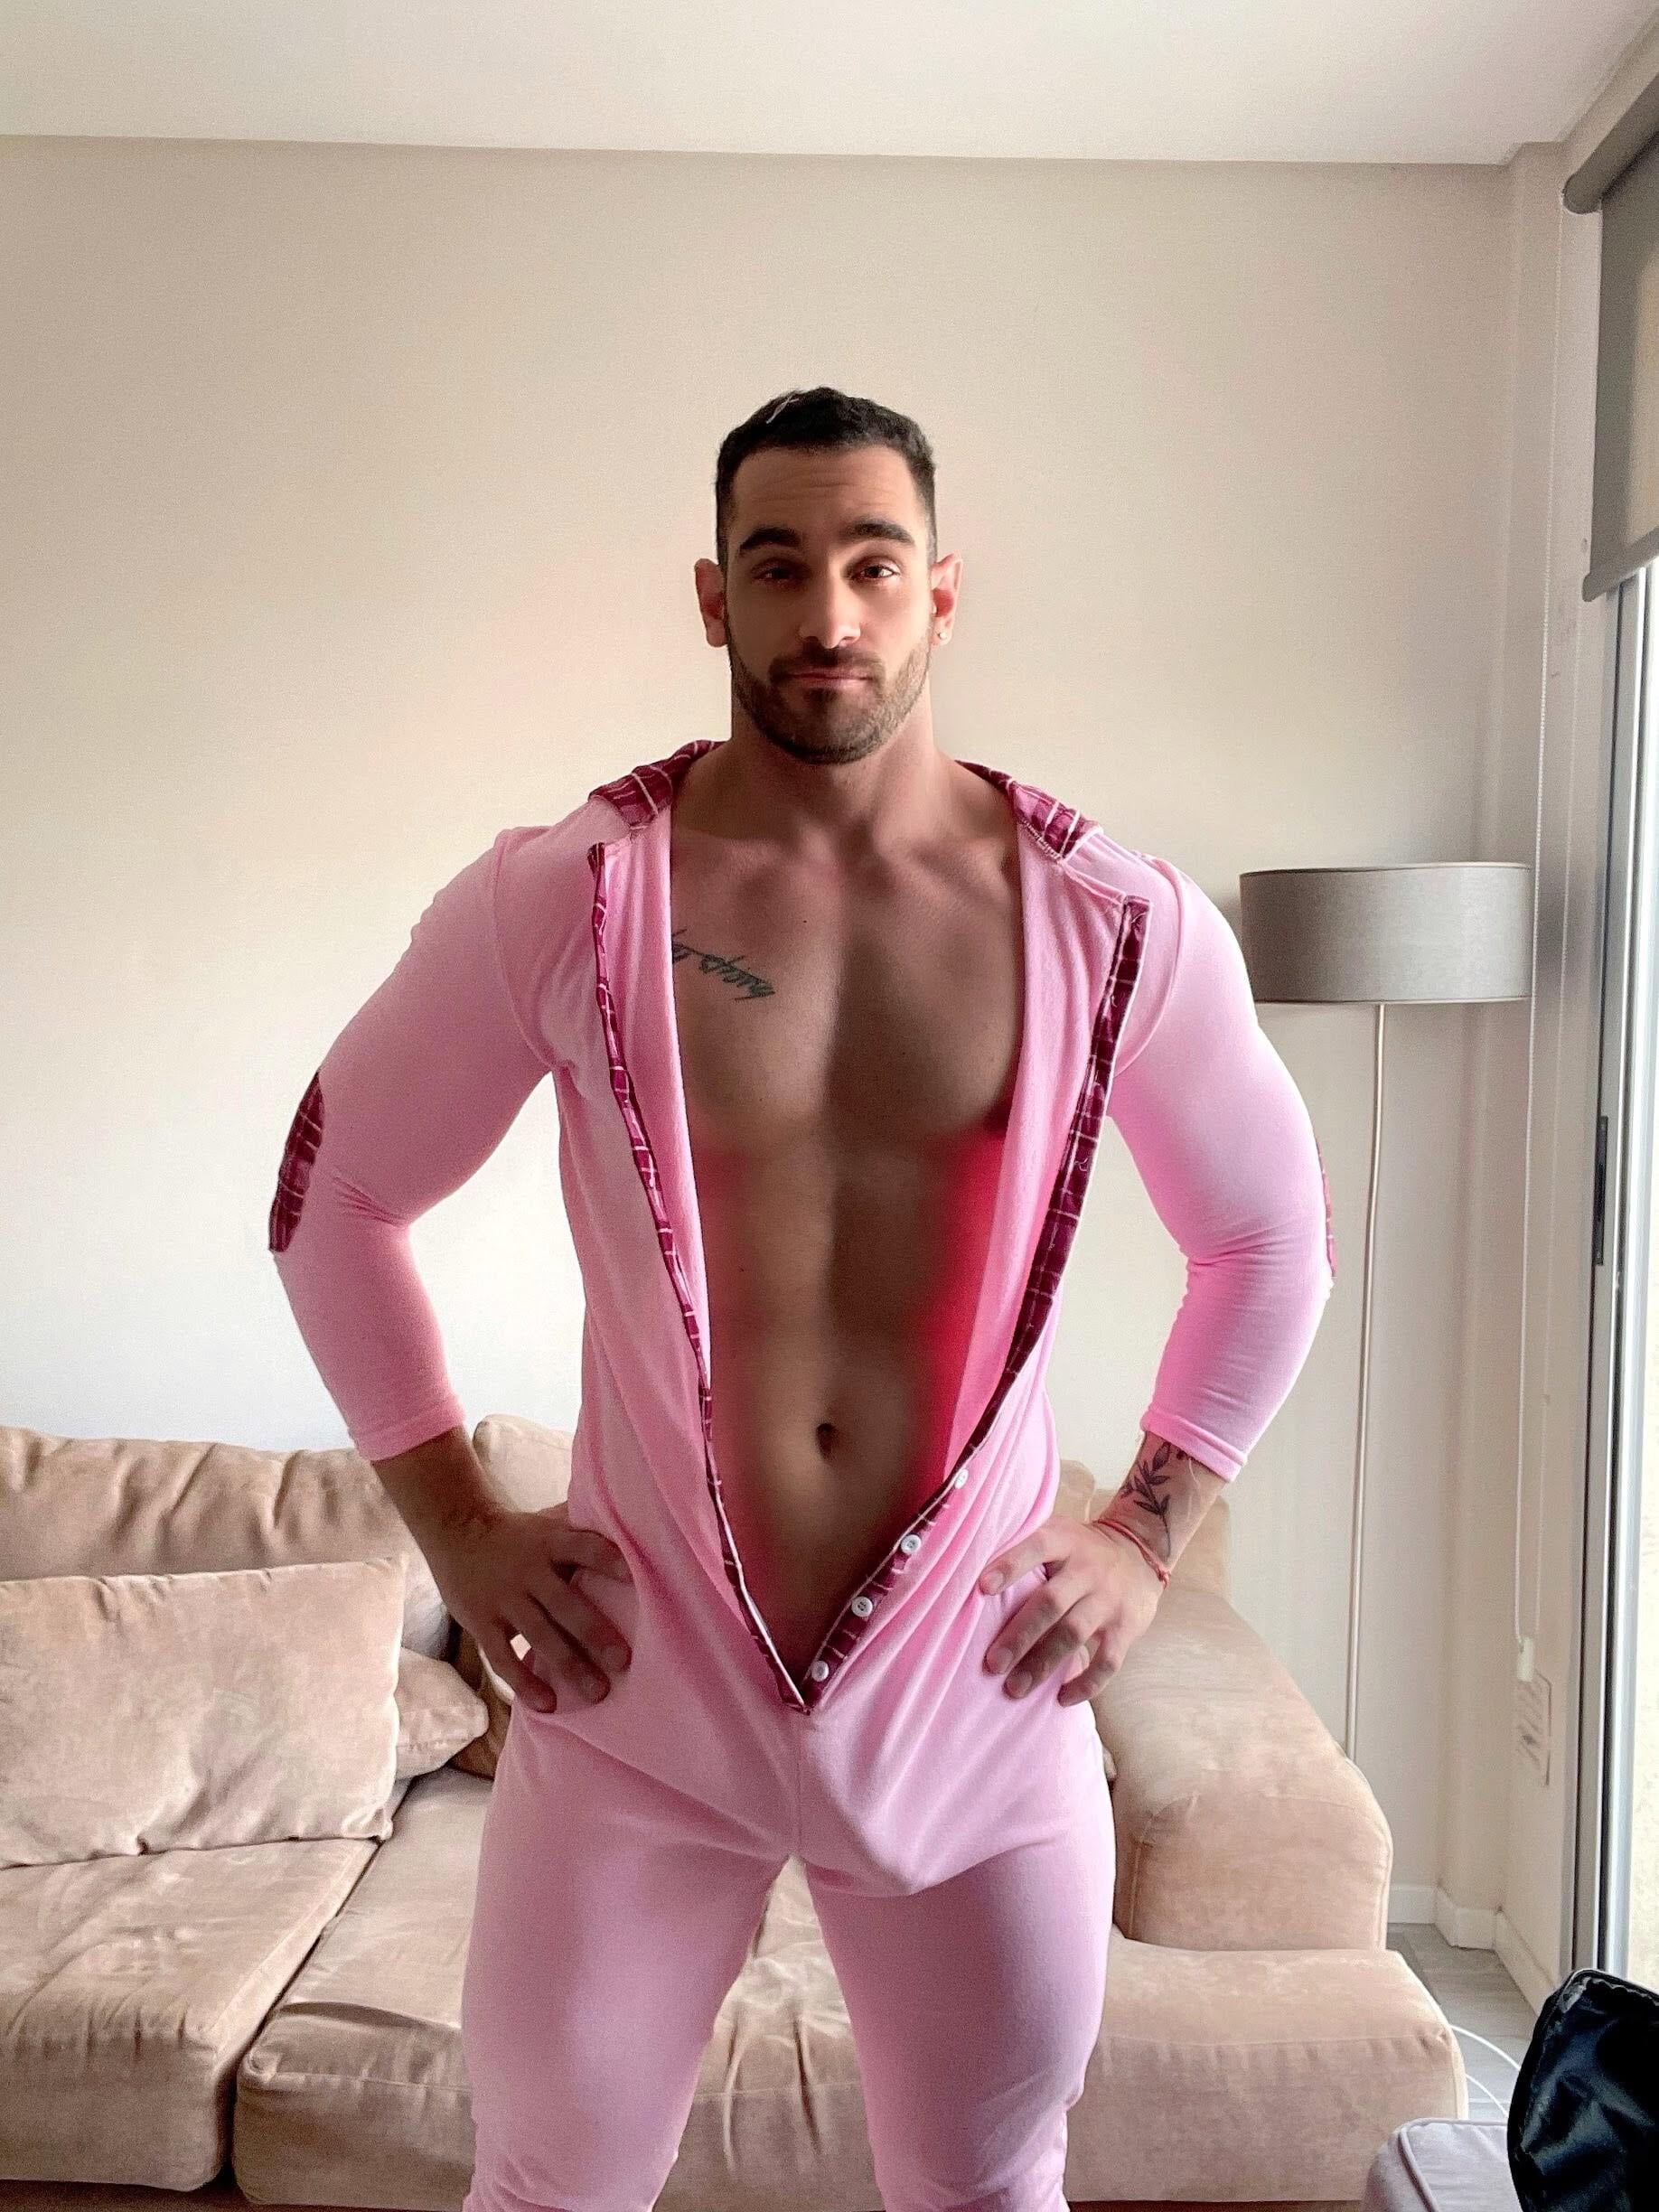 Do you like my pajamas